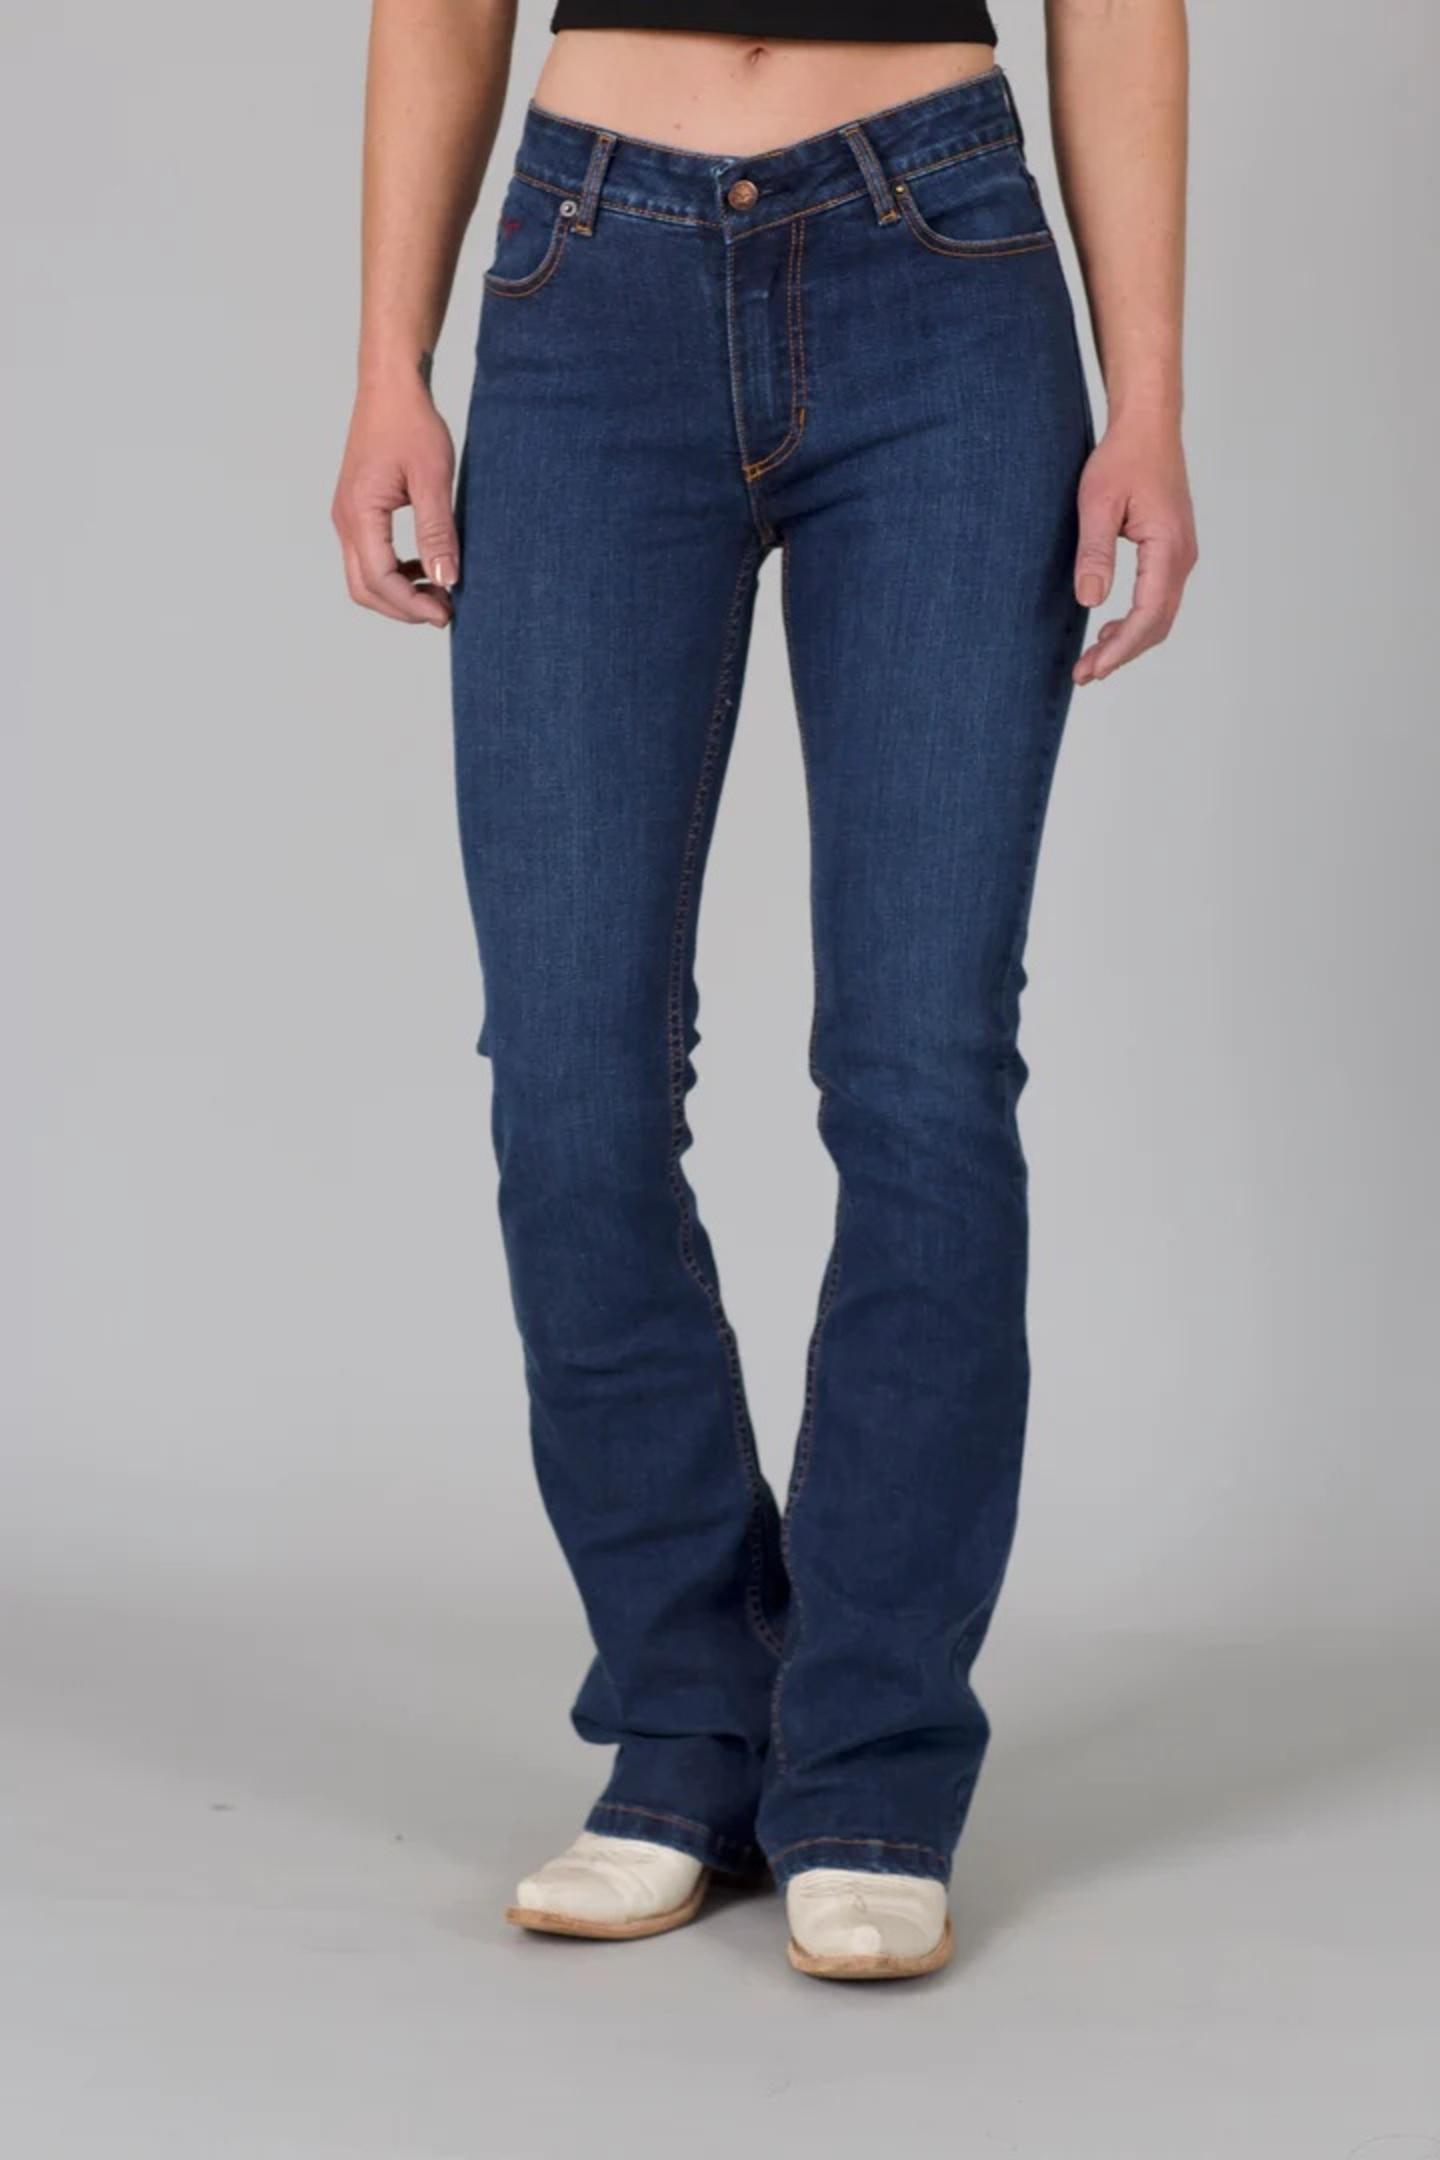 Kimes Ranch Women's Chloe Blue Jeans